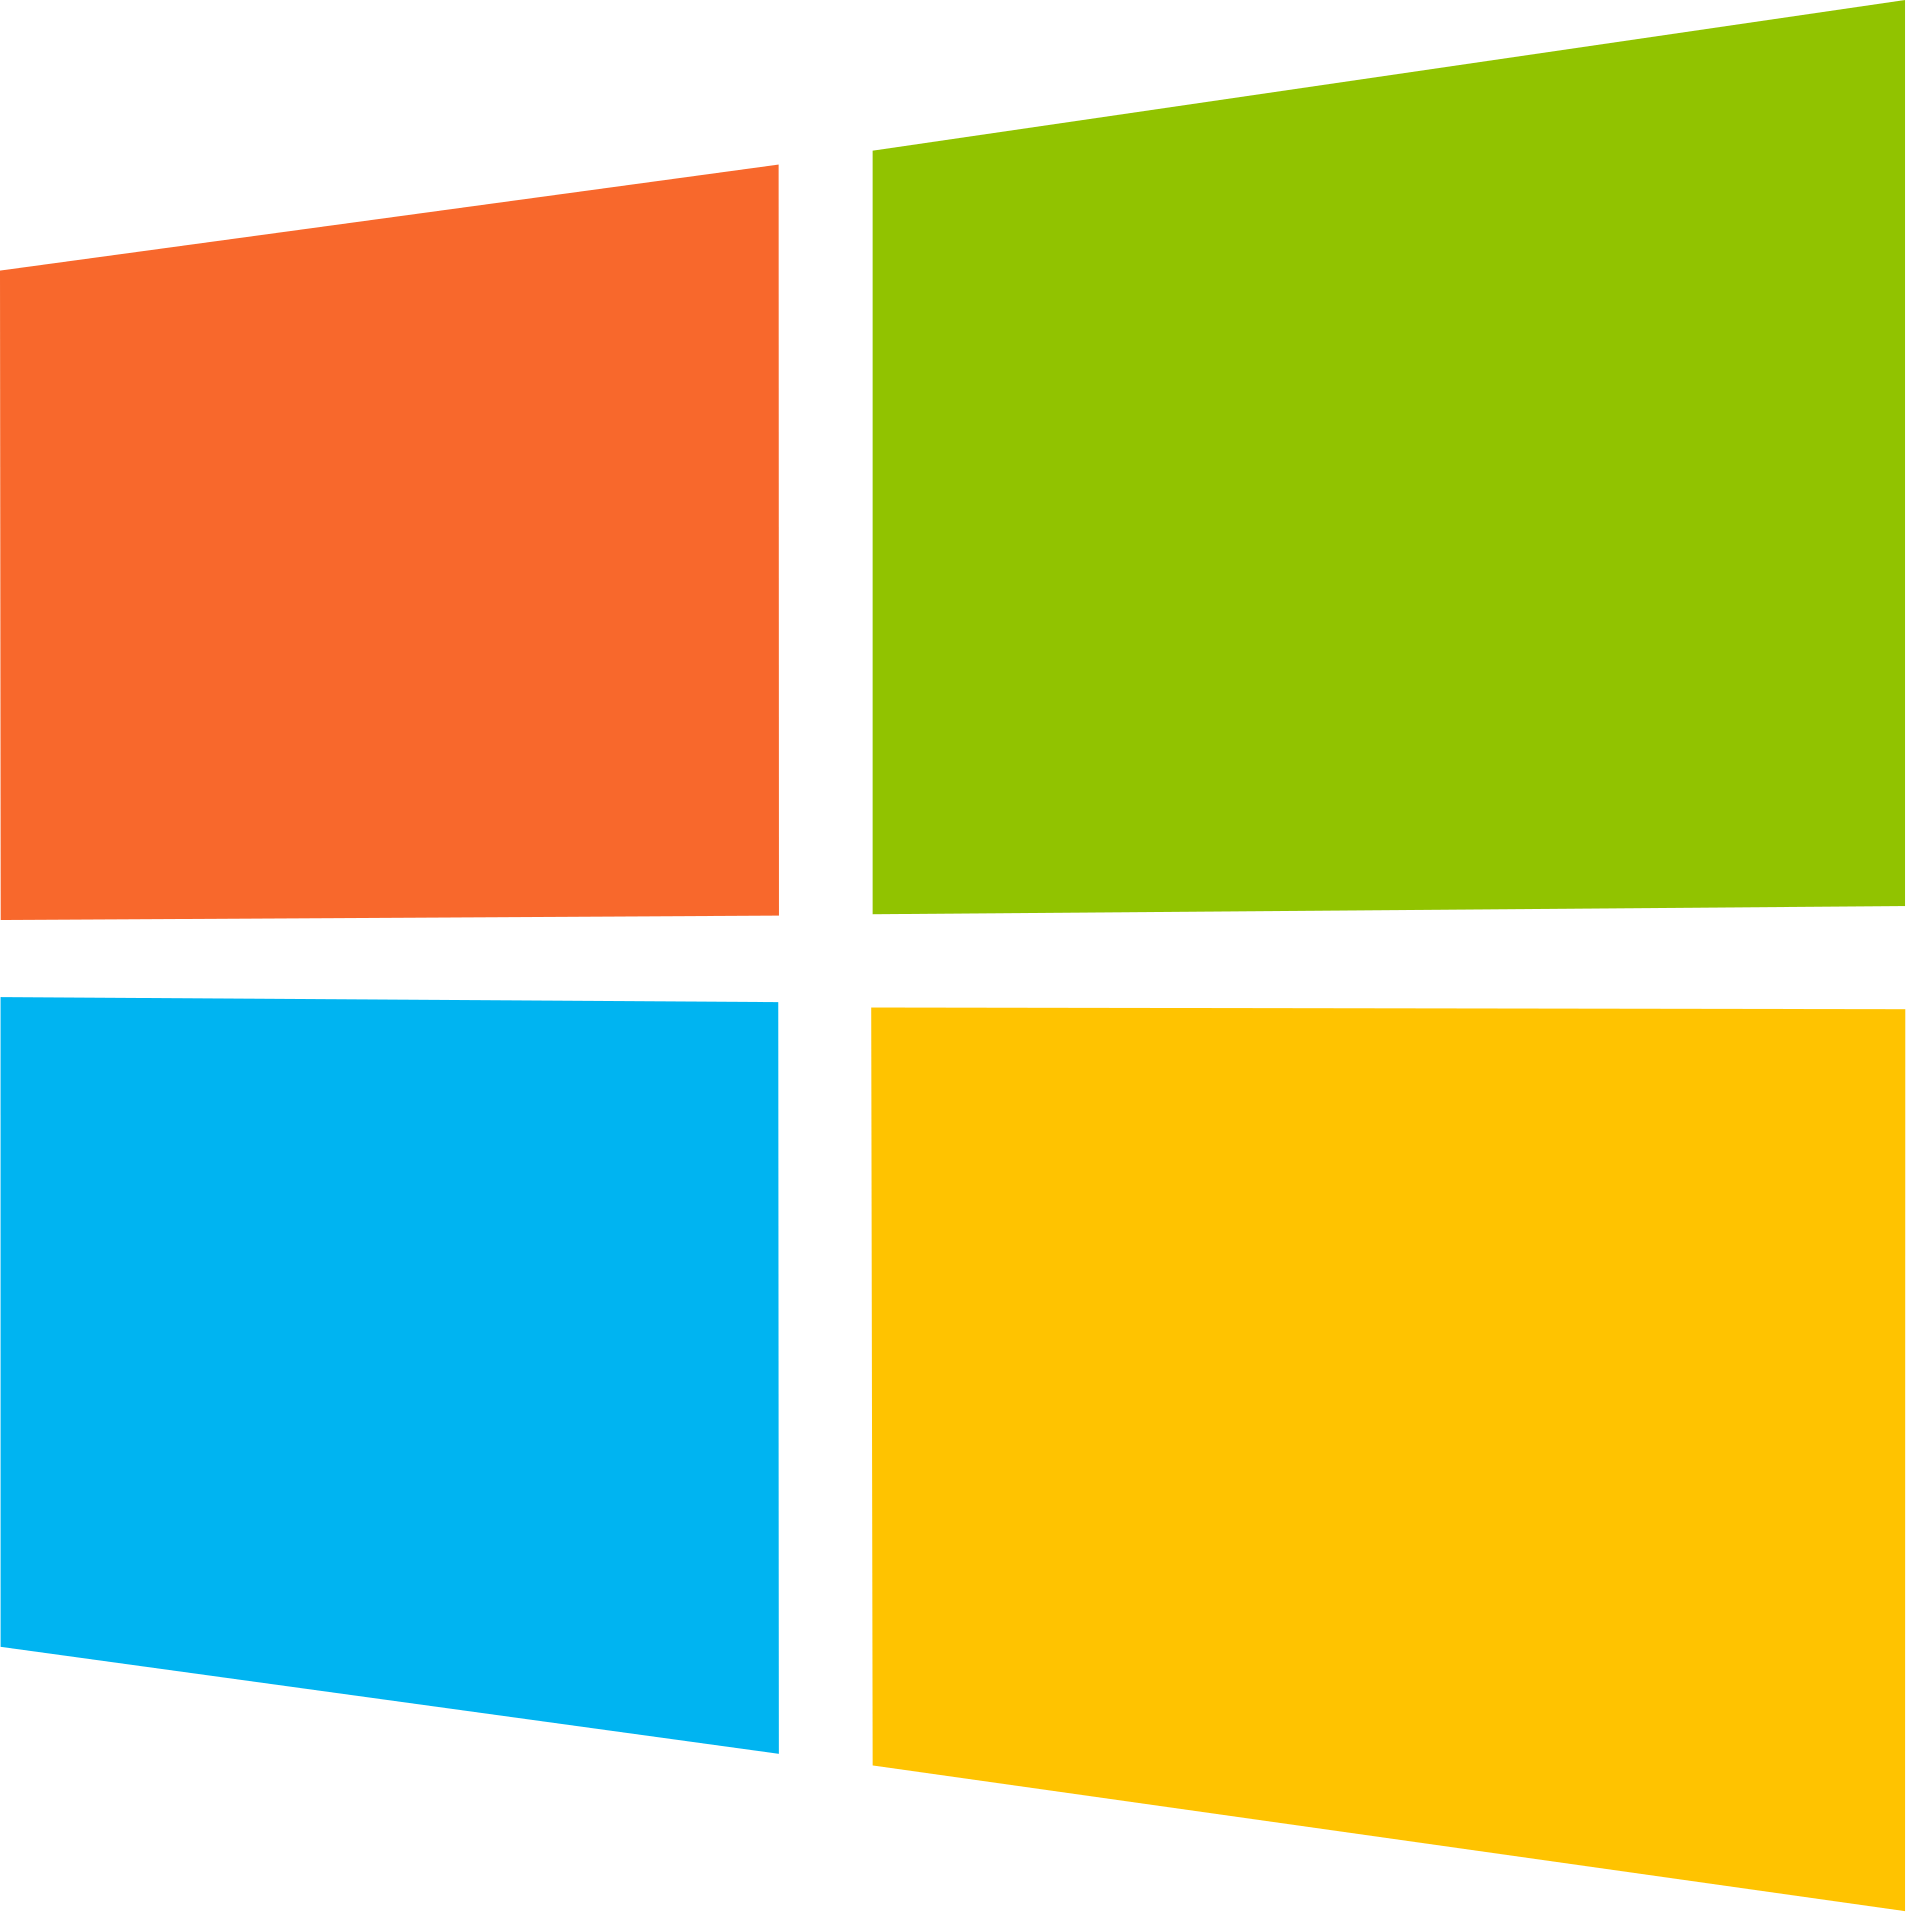 Logo di Microsoft. Il link rimanda alla pagina dei download su GitHub del progetto Reach.